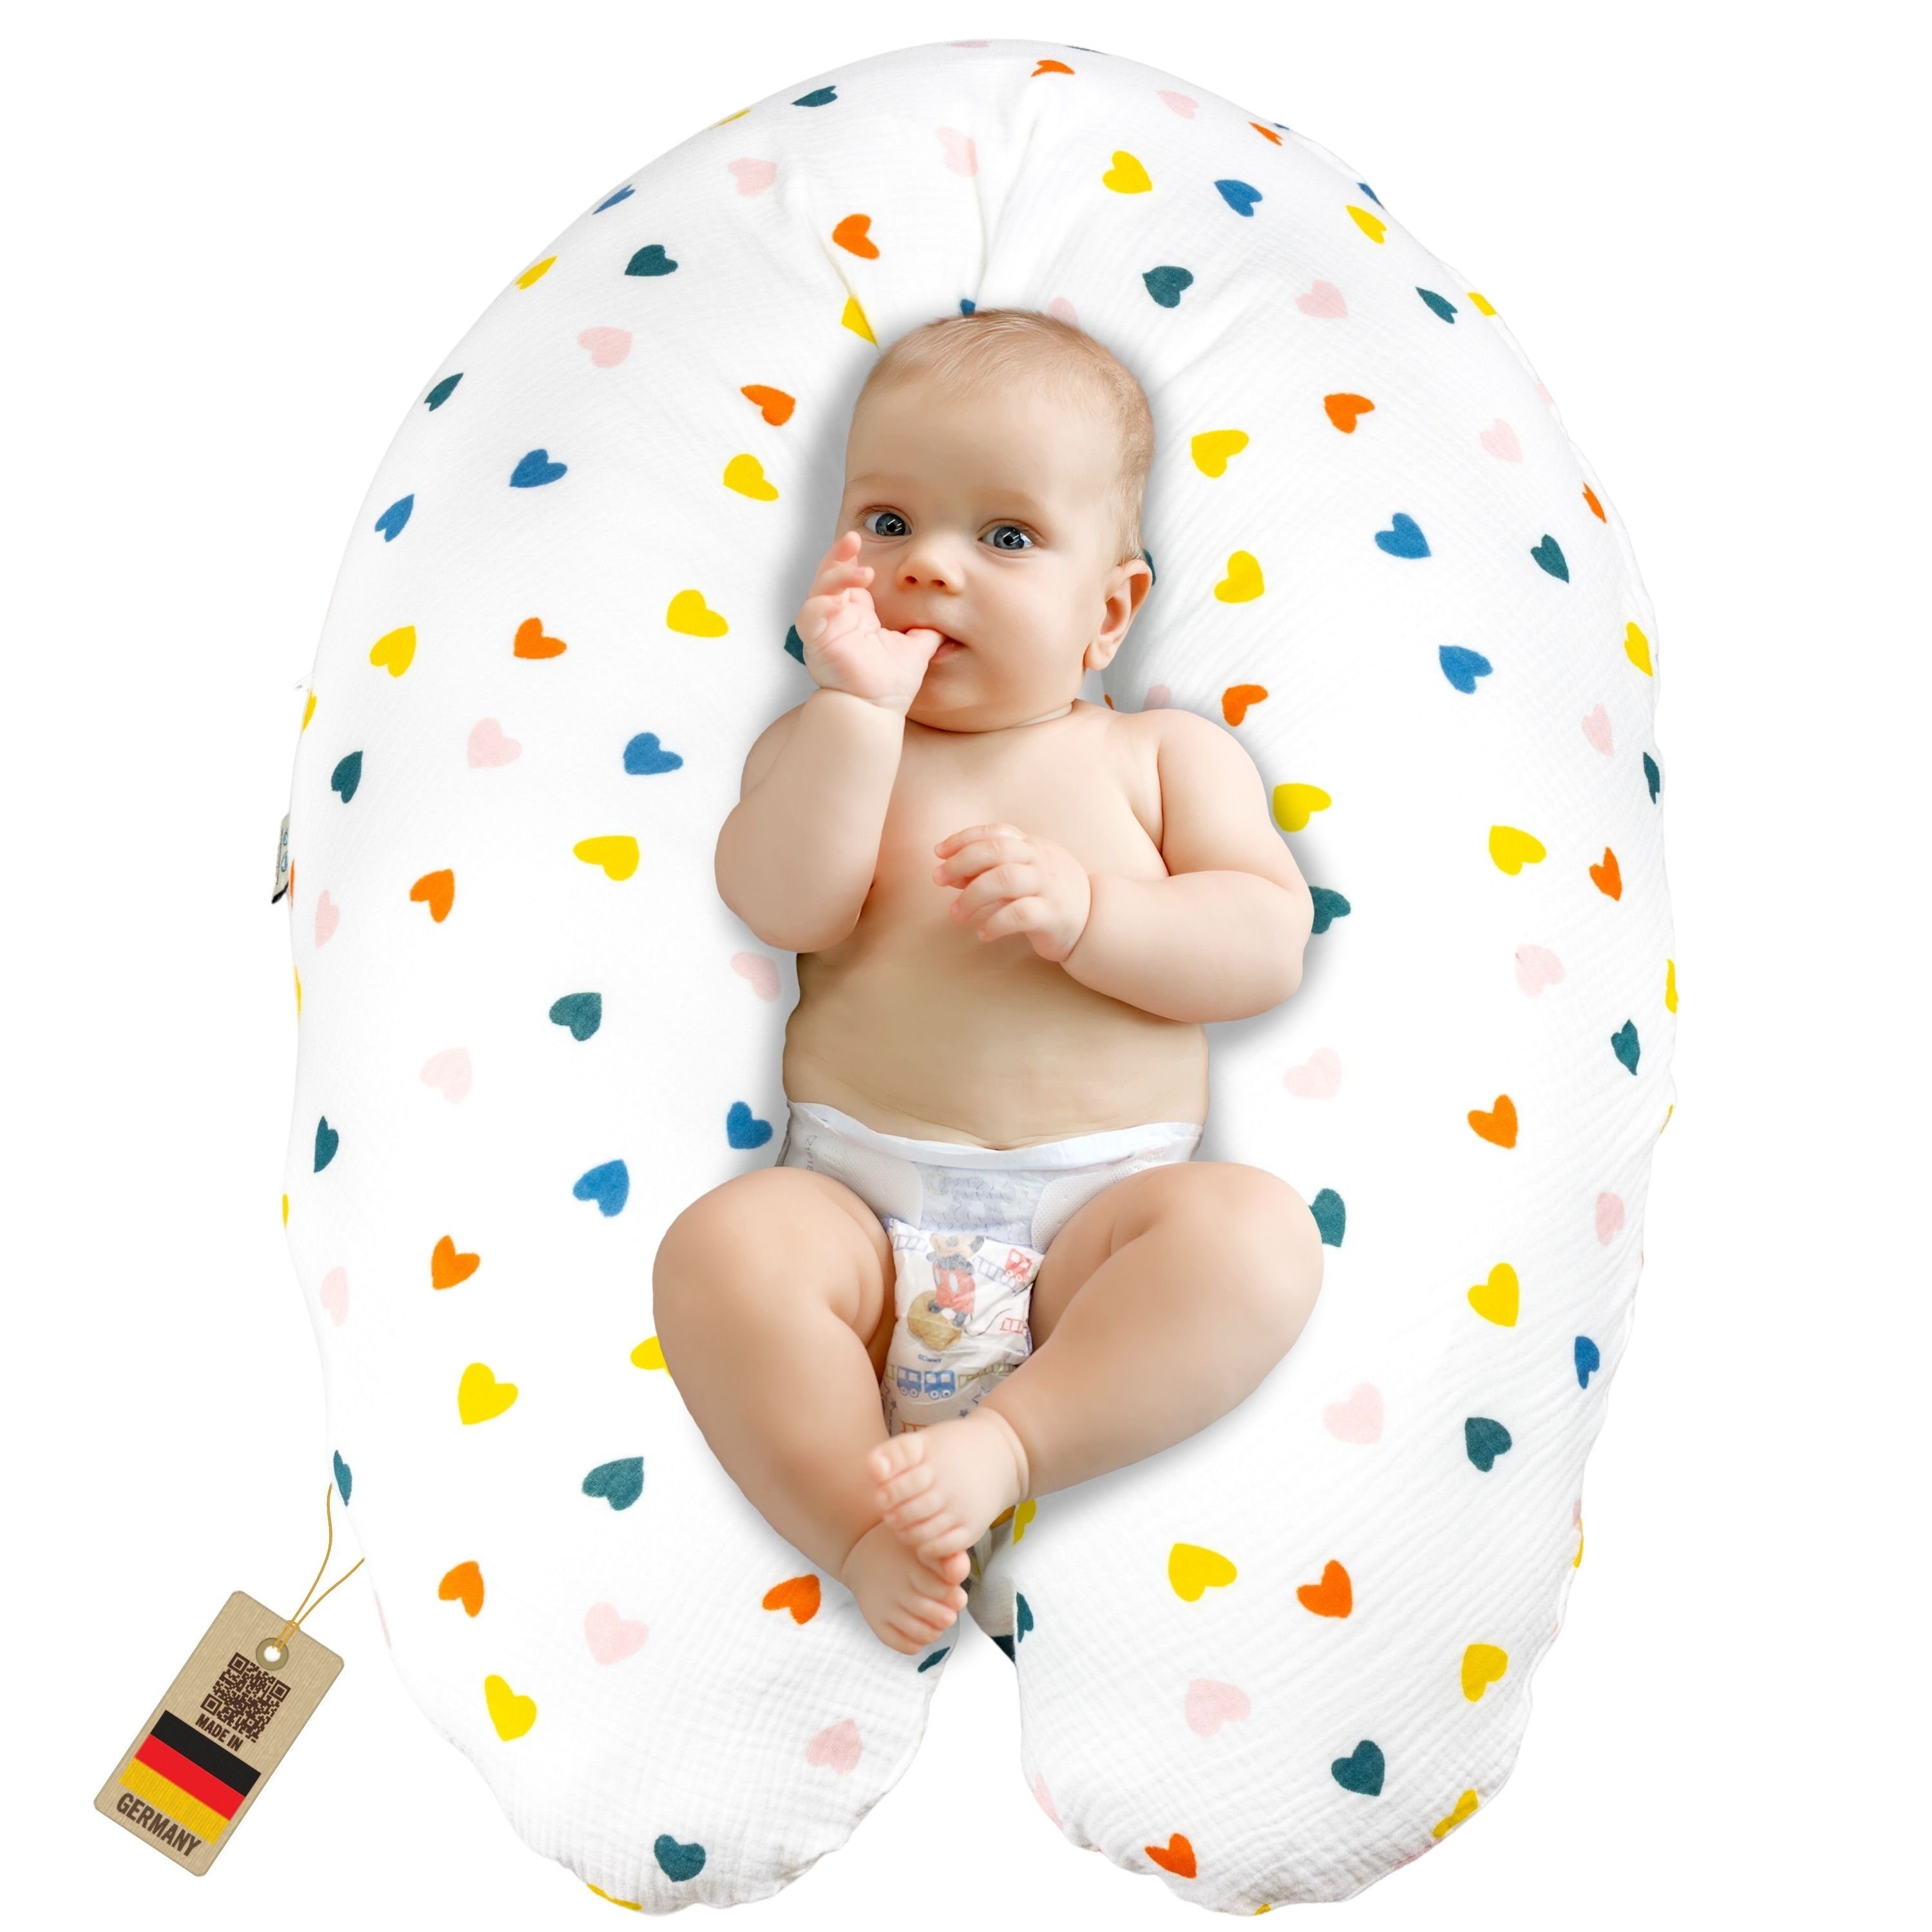 Neugeborene, SEI Babynest Schwangerschaftskissen - Musselin Baby Baumwolle Stillkissen Bezug, BIO mit XXL Seitenschläferkissen Design Erstausstattung